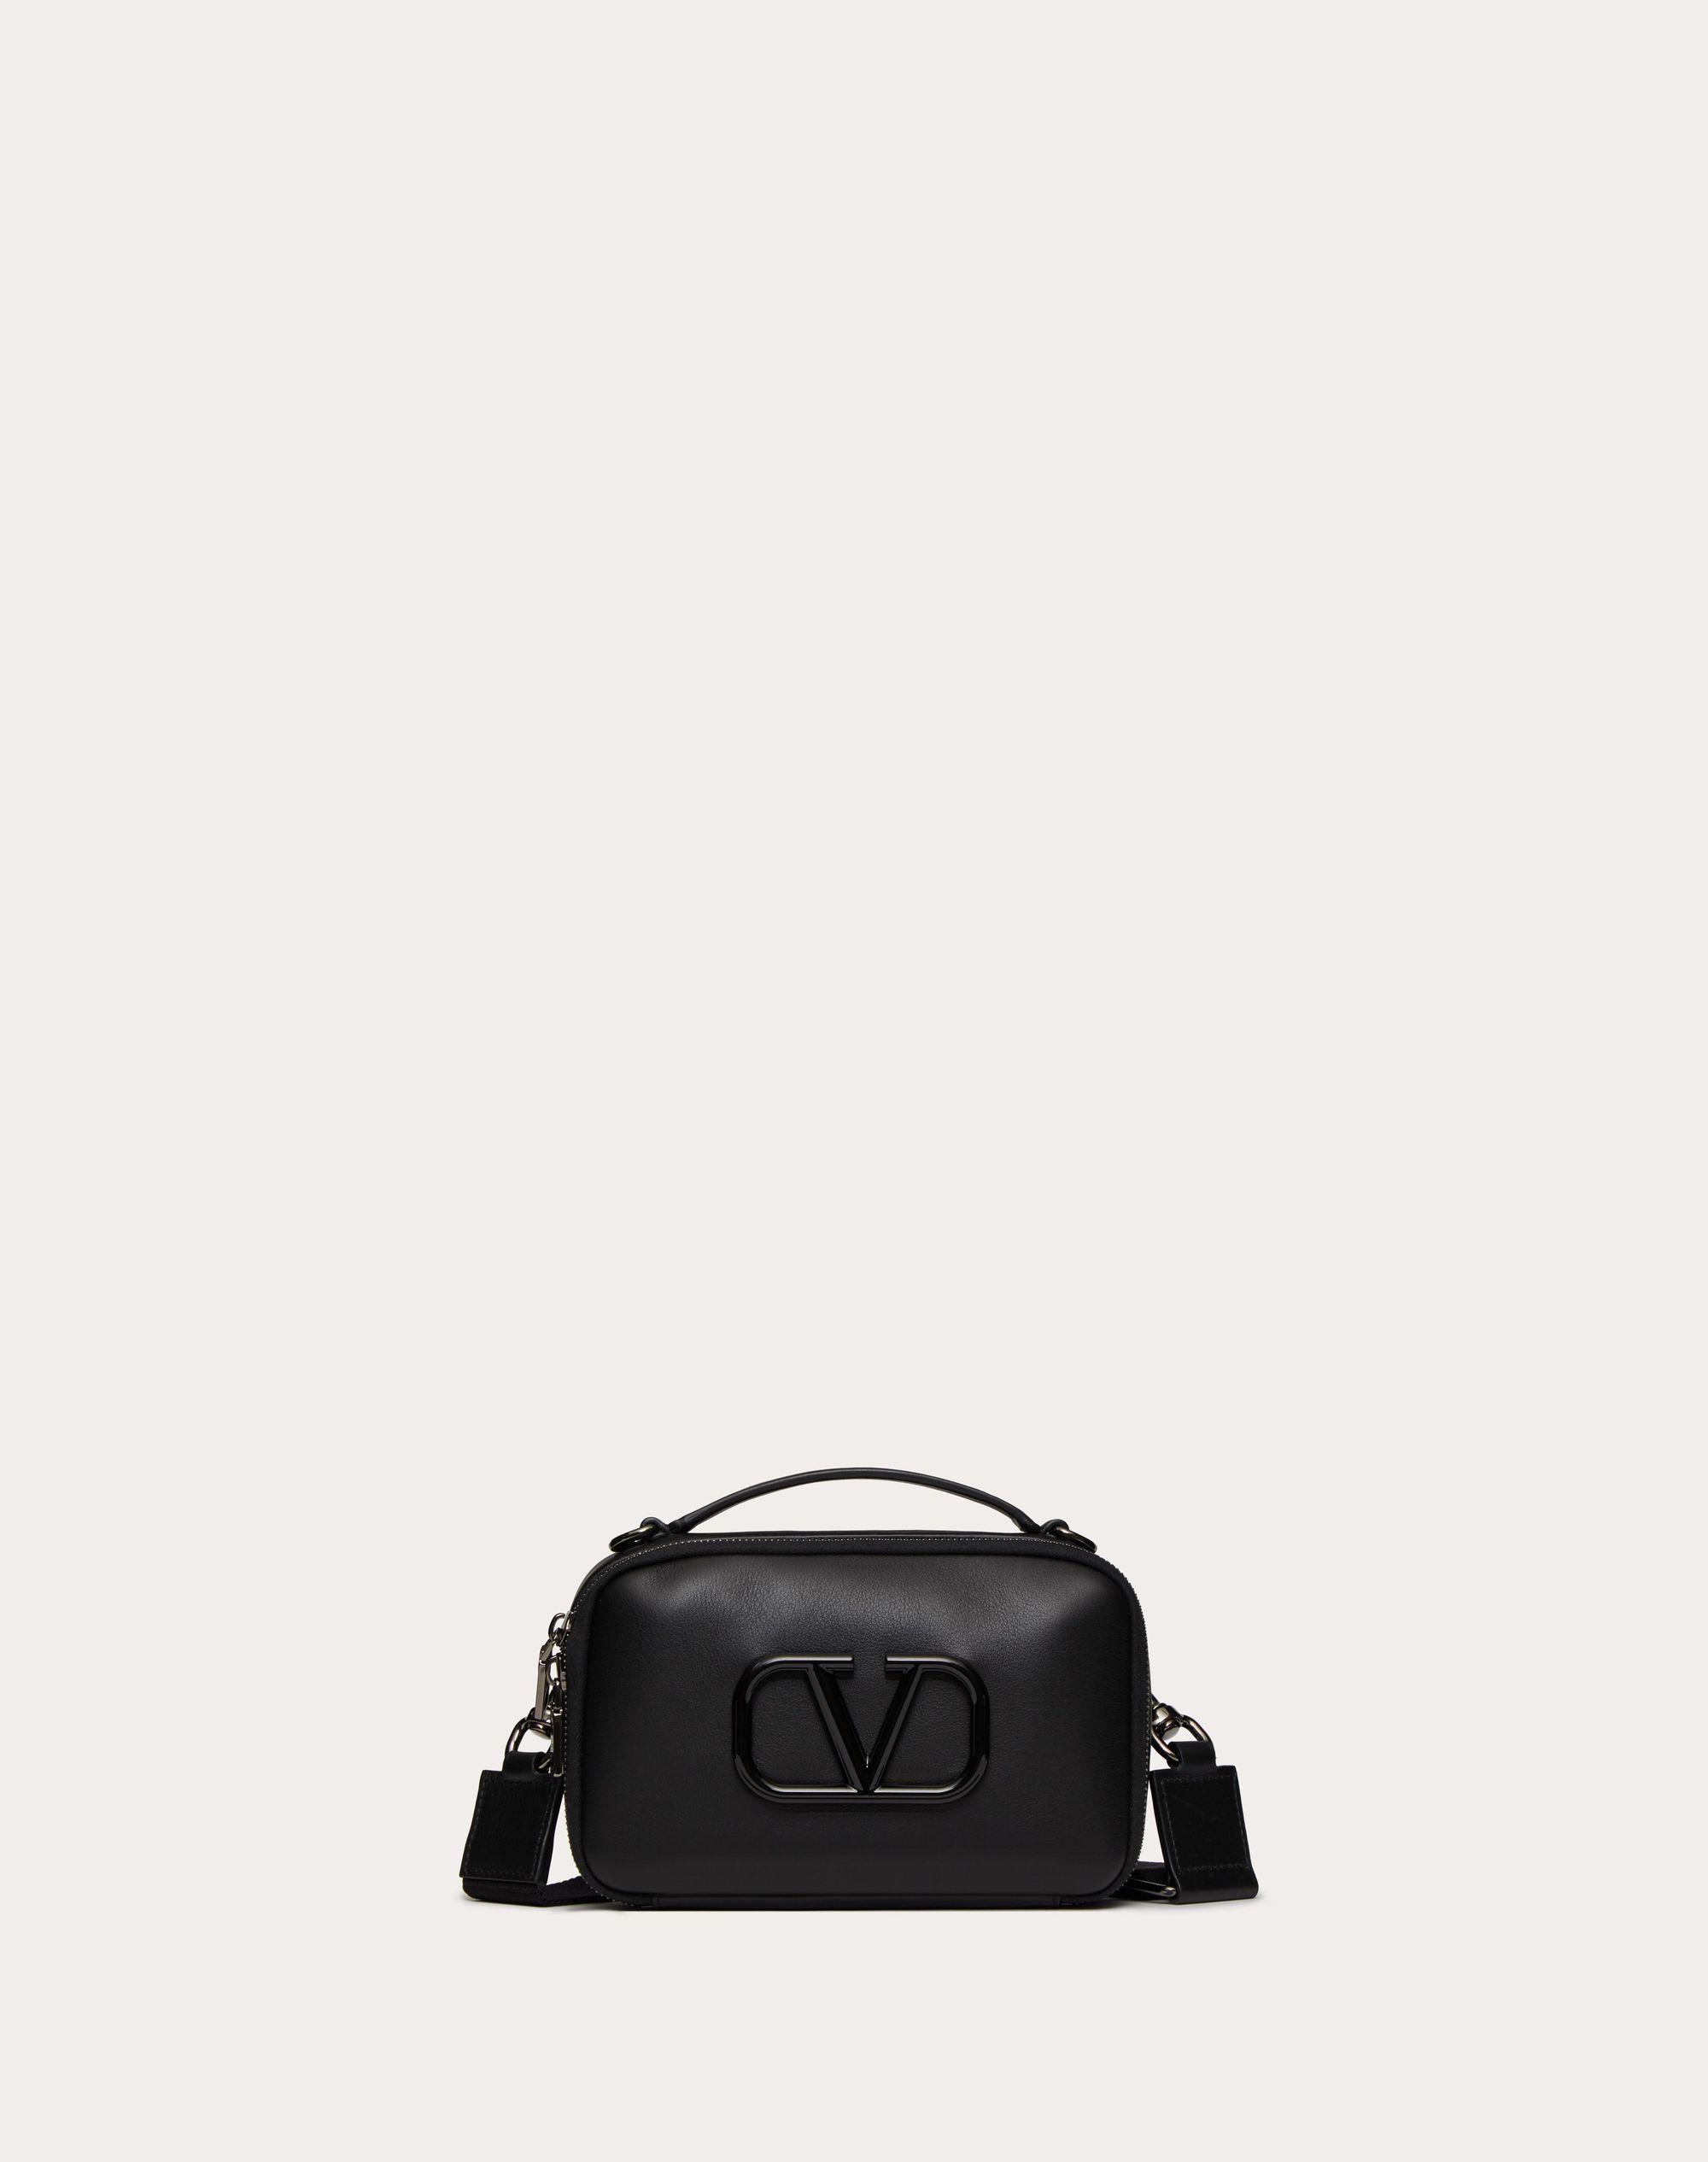 Valentino Rockstud23 Small Leather Shoulder Bag